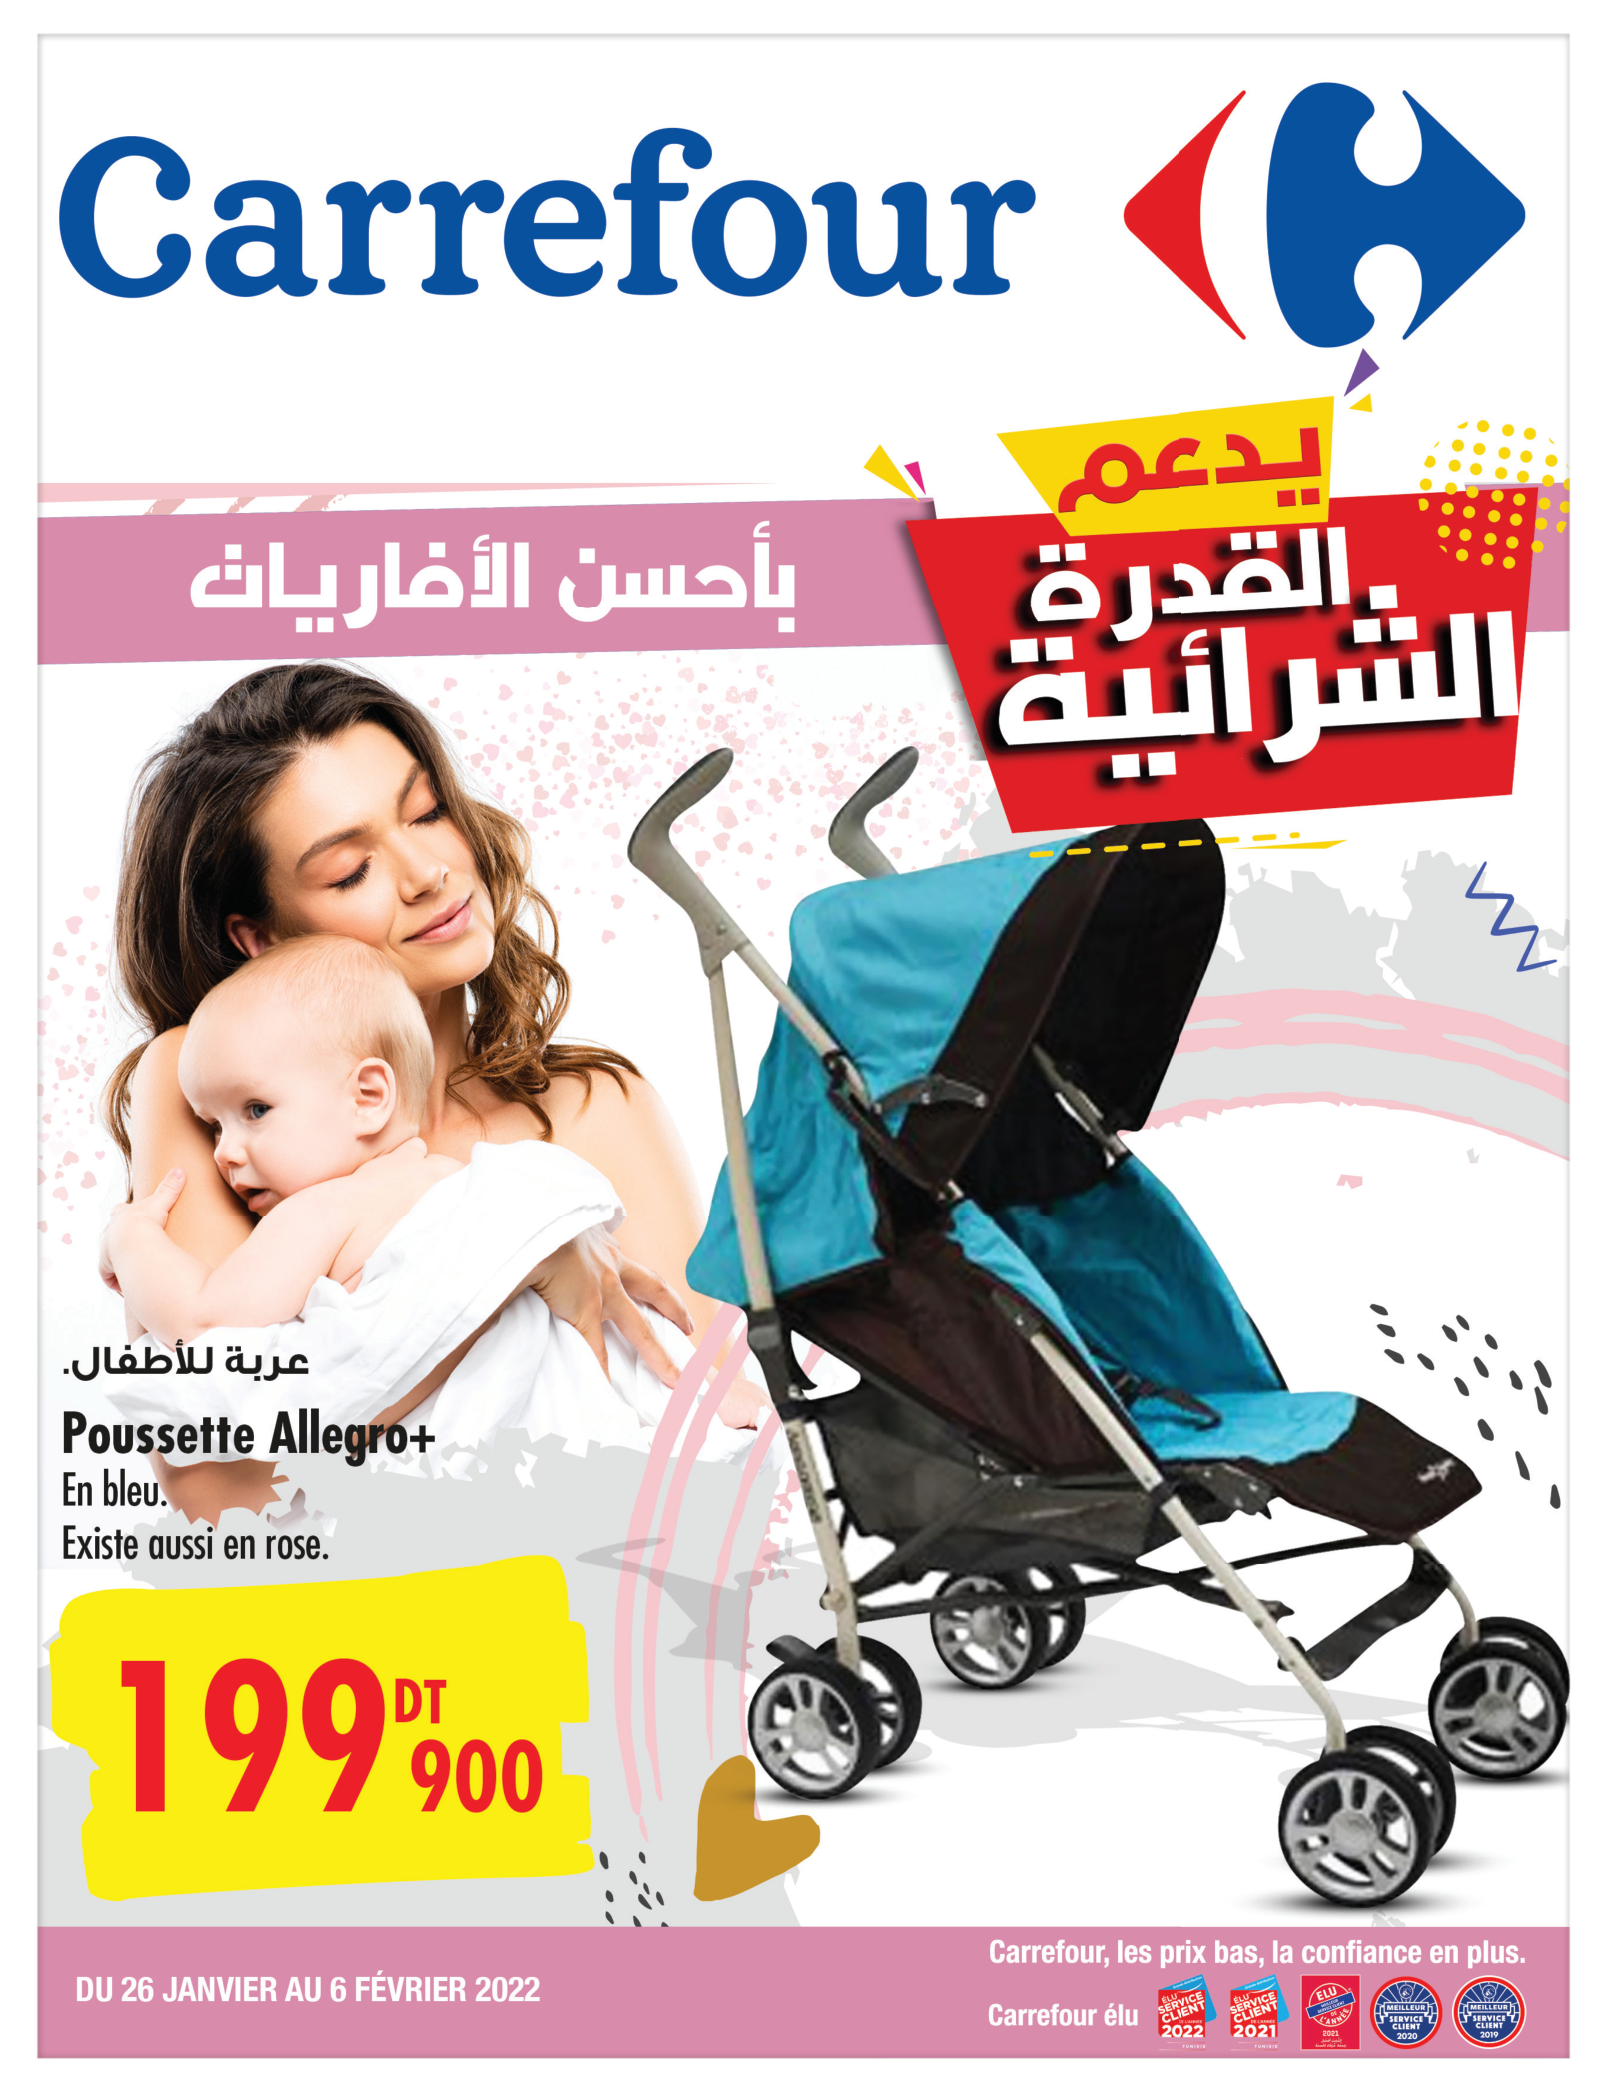 Carrefour: Spécial bébé